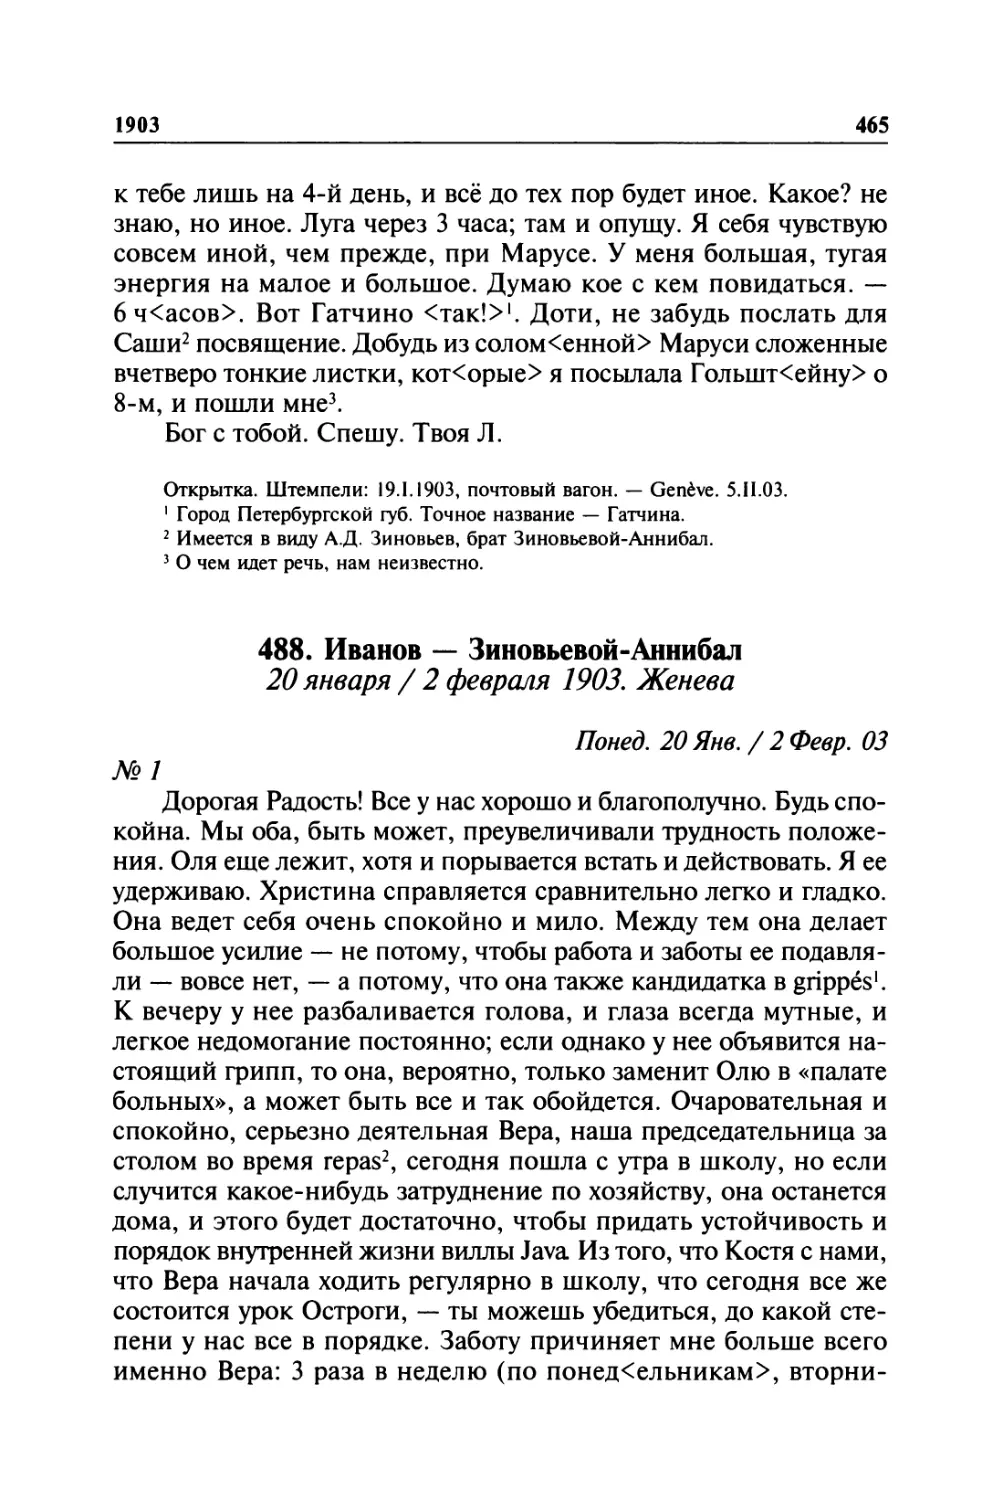 488. Иванов — Зиновьевой-Аннибал. 20 января / 2 февраля 1903. Женева